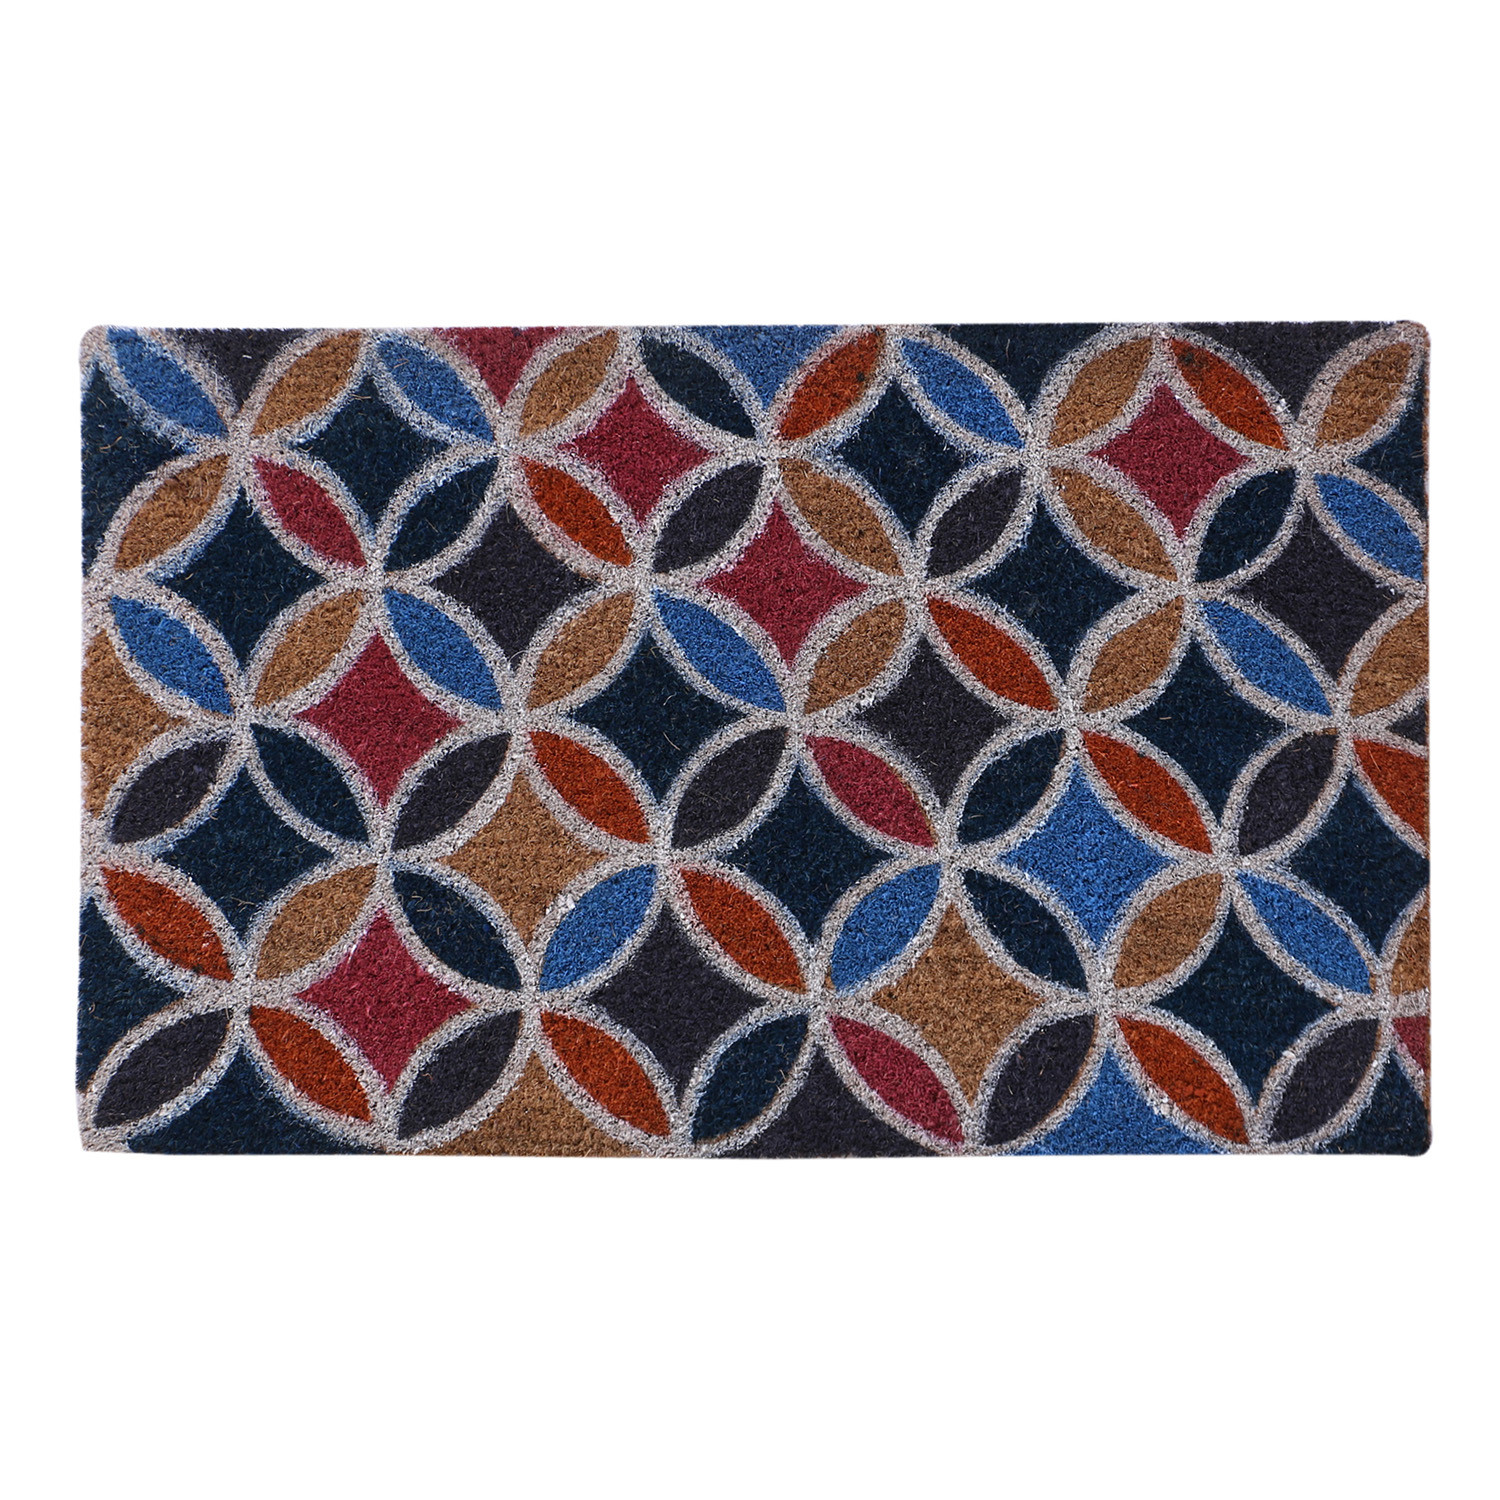 Kuber Industries Door Mat|Polyethylene Durable & Anti-Slip Natural Floral Print Floor Mat|Rug For Indoor or Outdoor, 30x20 Inch (Brown)